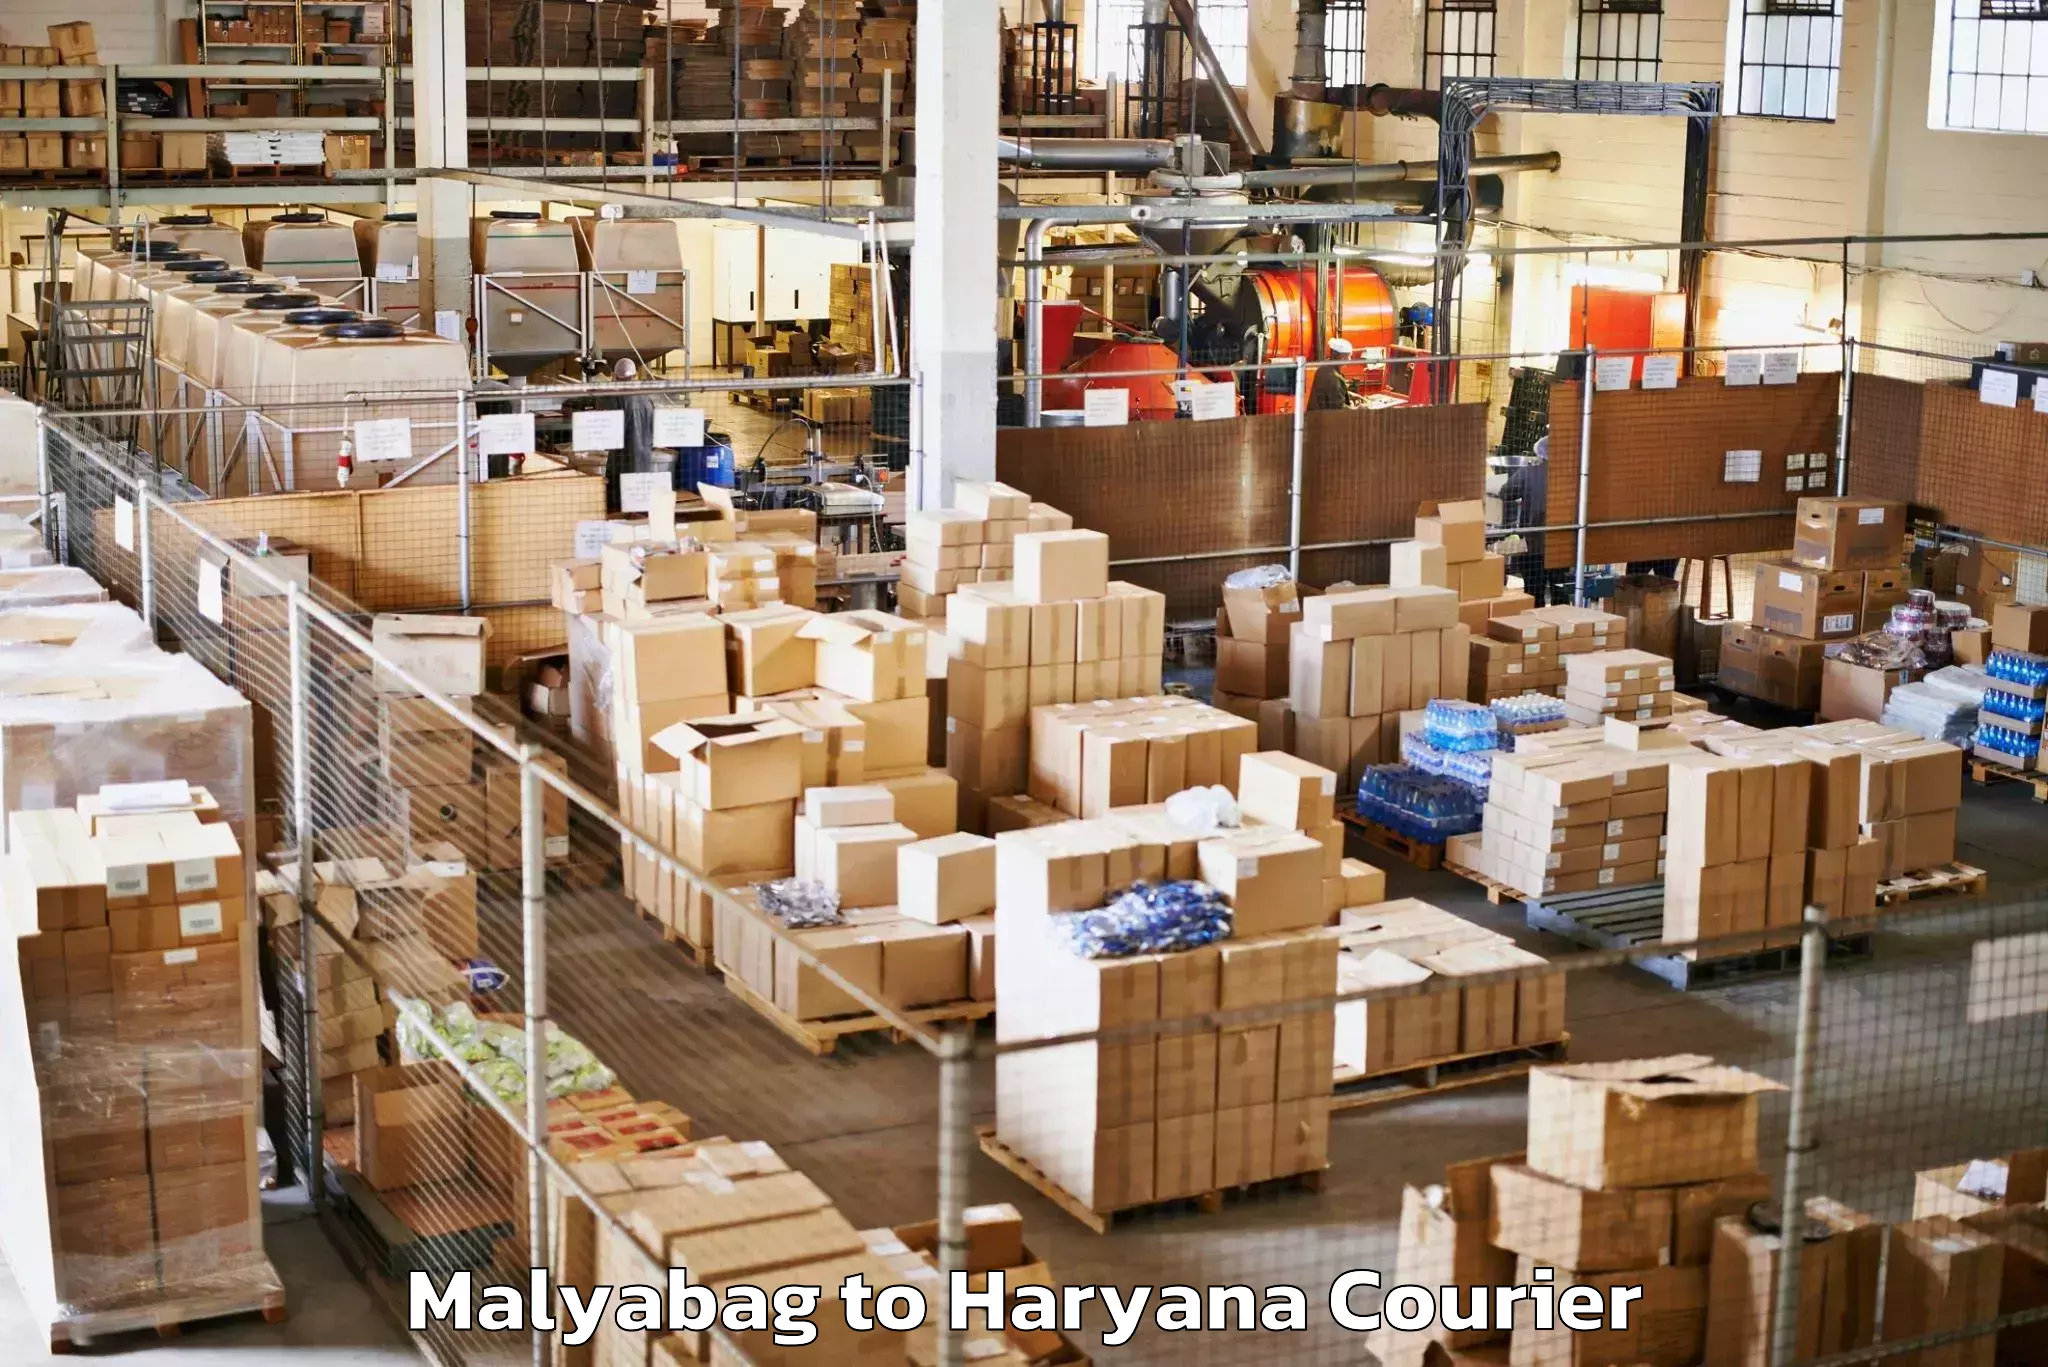 Urgent luggage shipment Malyabag to Dharuhera